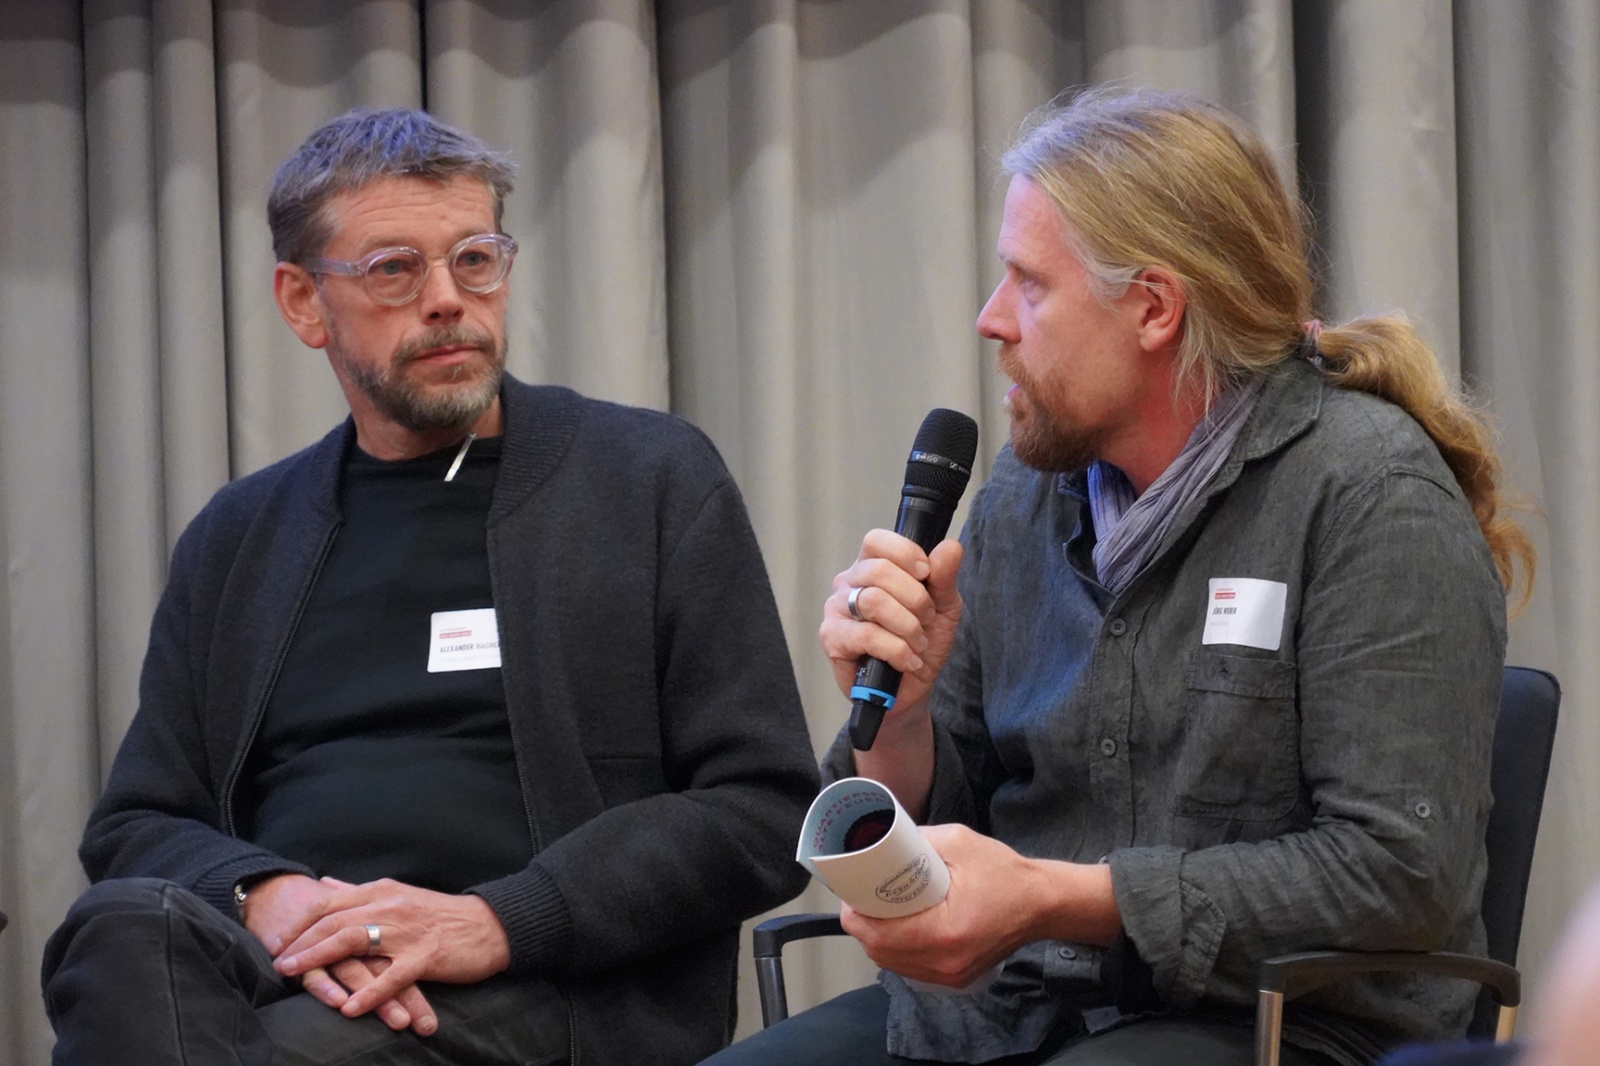 Wohnbaukonferenz »Neues Wohnen denken« | SESSION : Alexander Hagner und Jörg Weber, Figure: Katja Gehlfuß